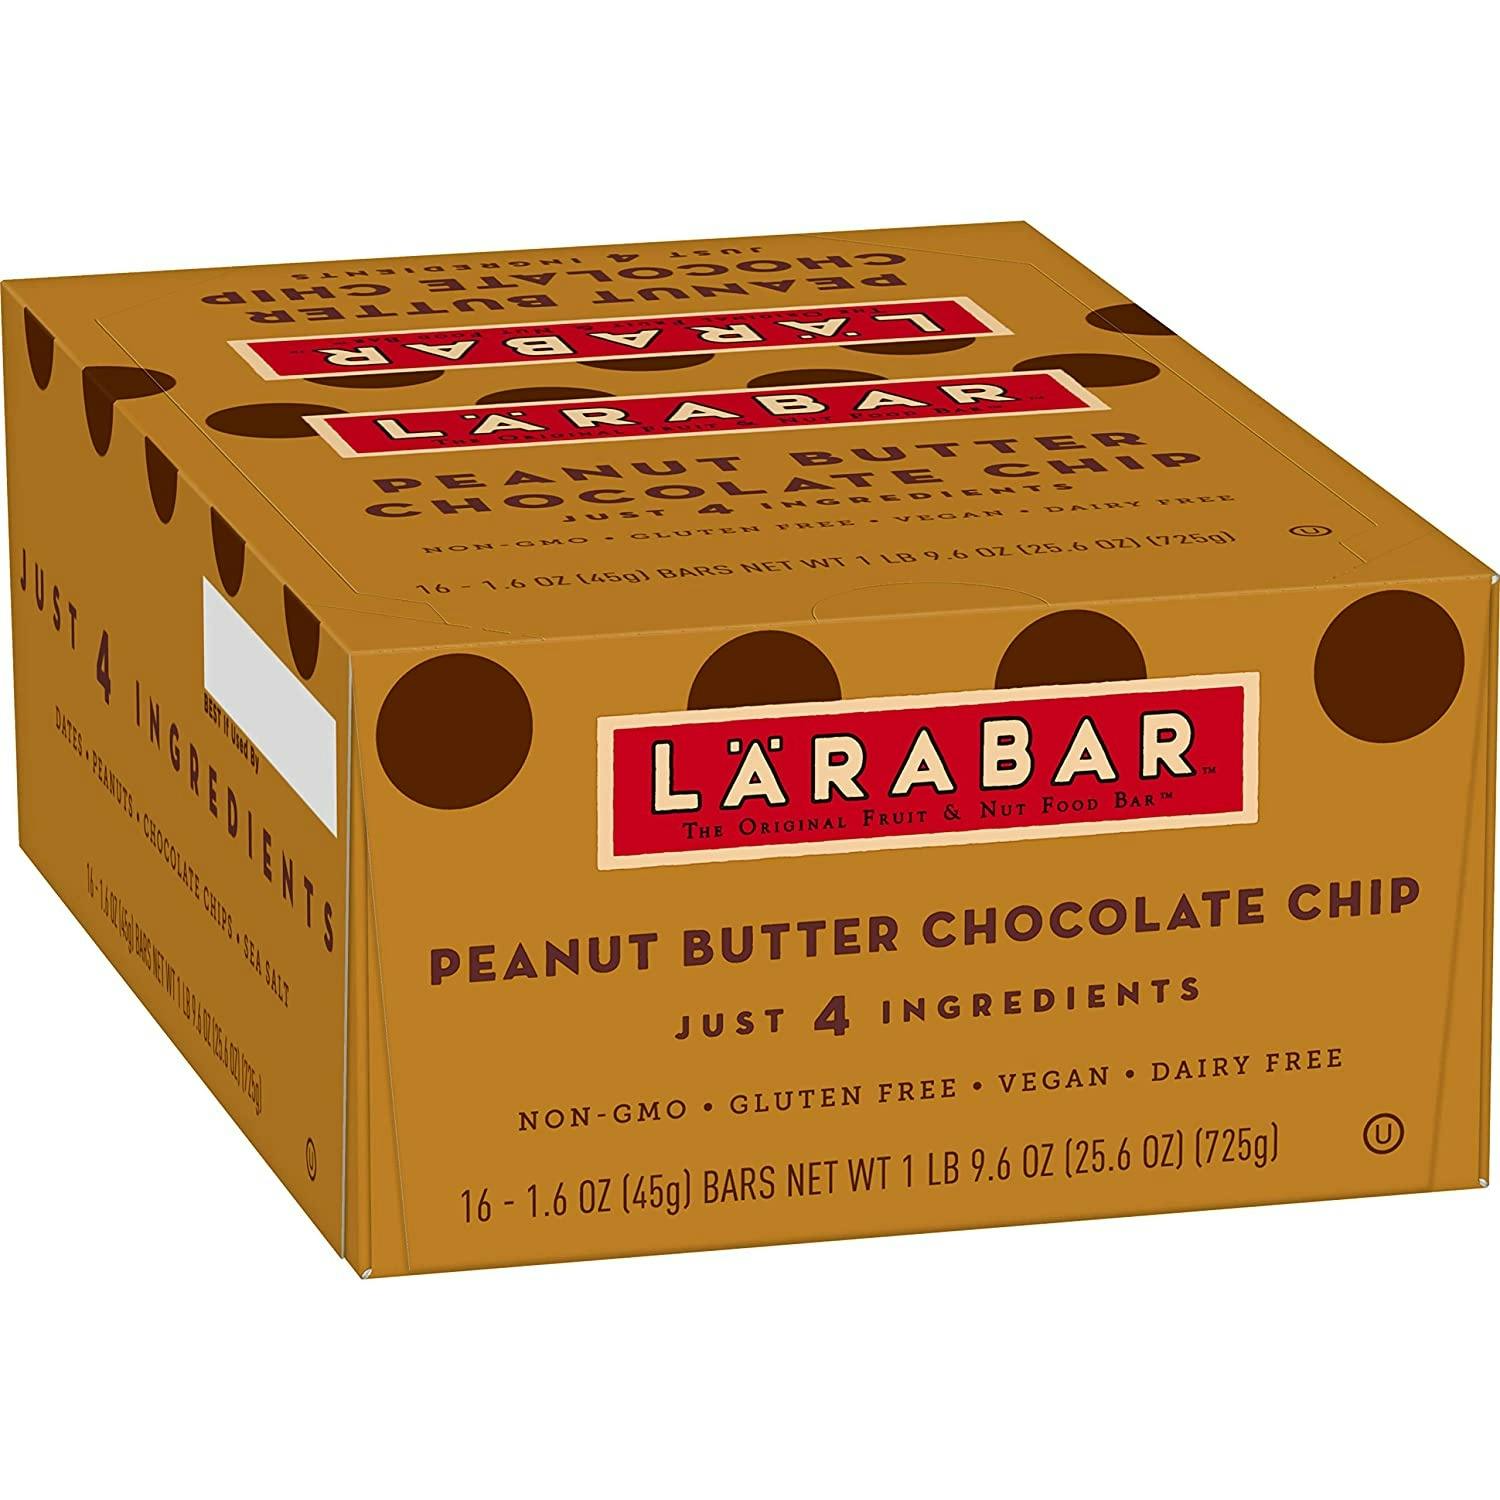 Larabar Peanut Butter Chocolate Chip Snack Bar